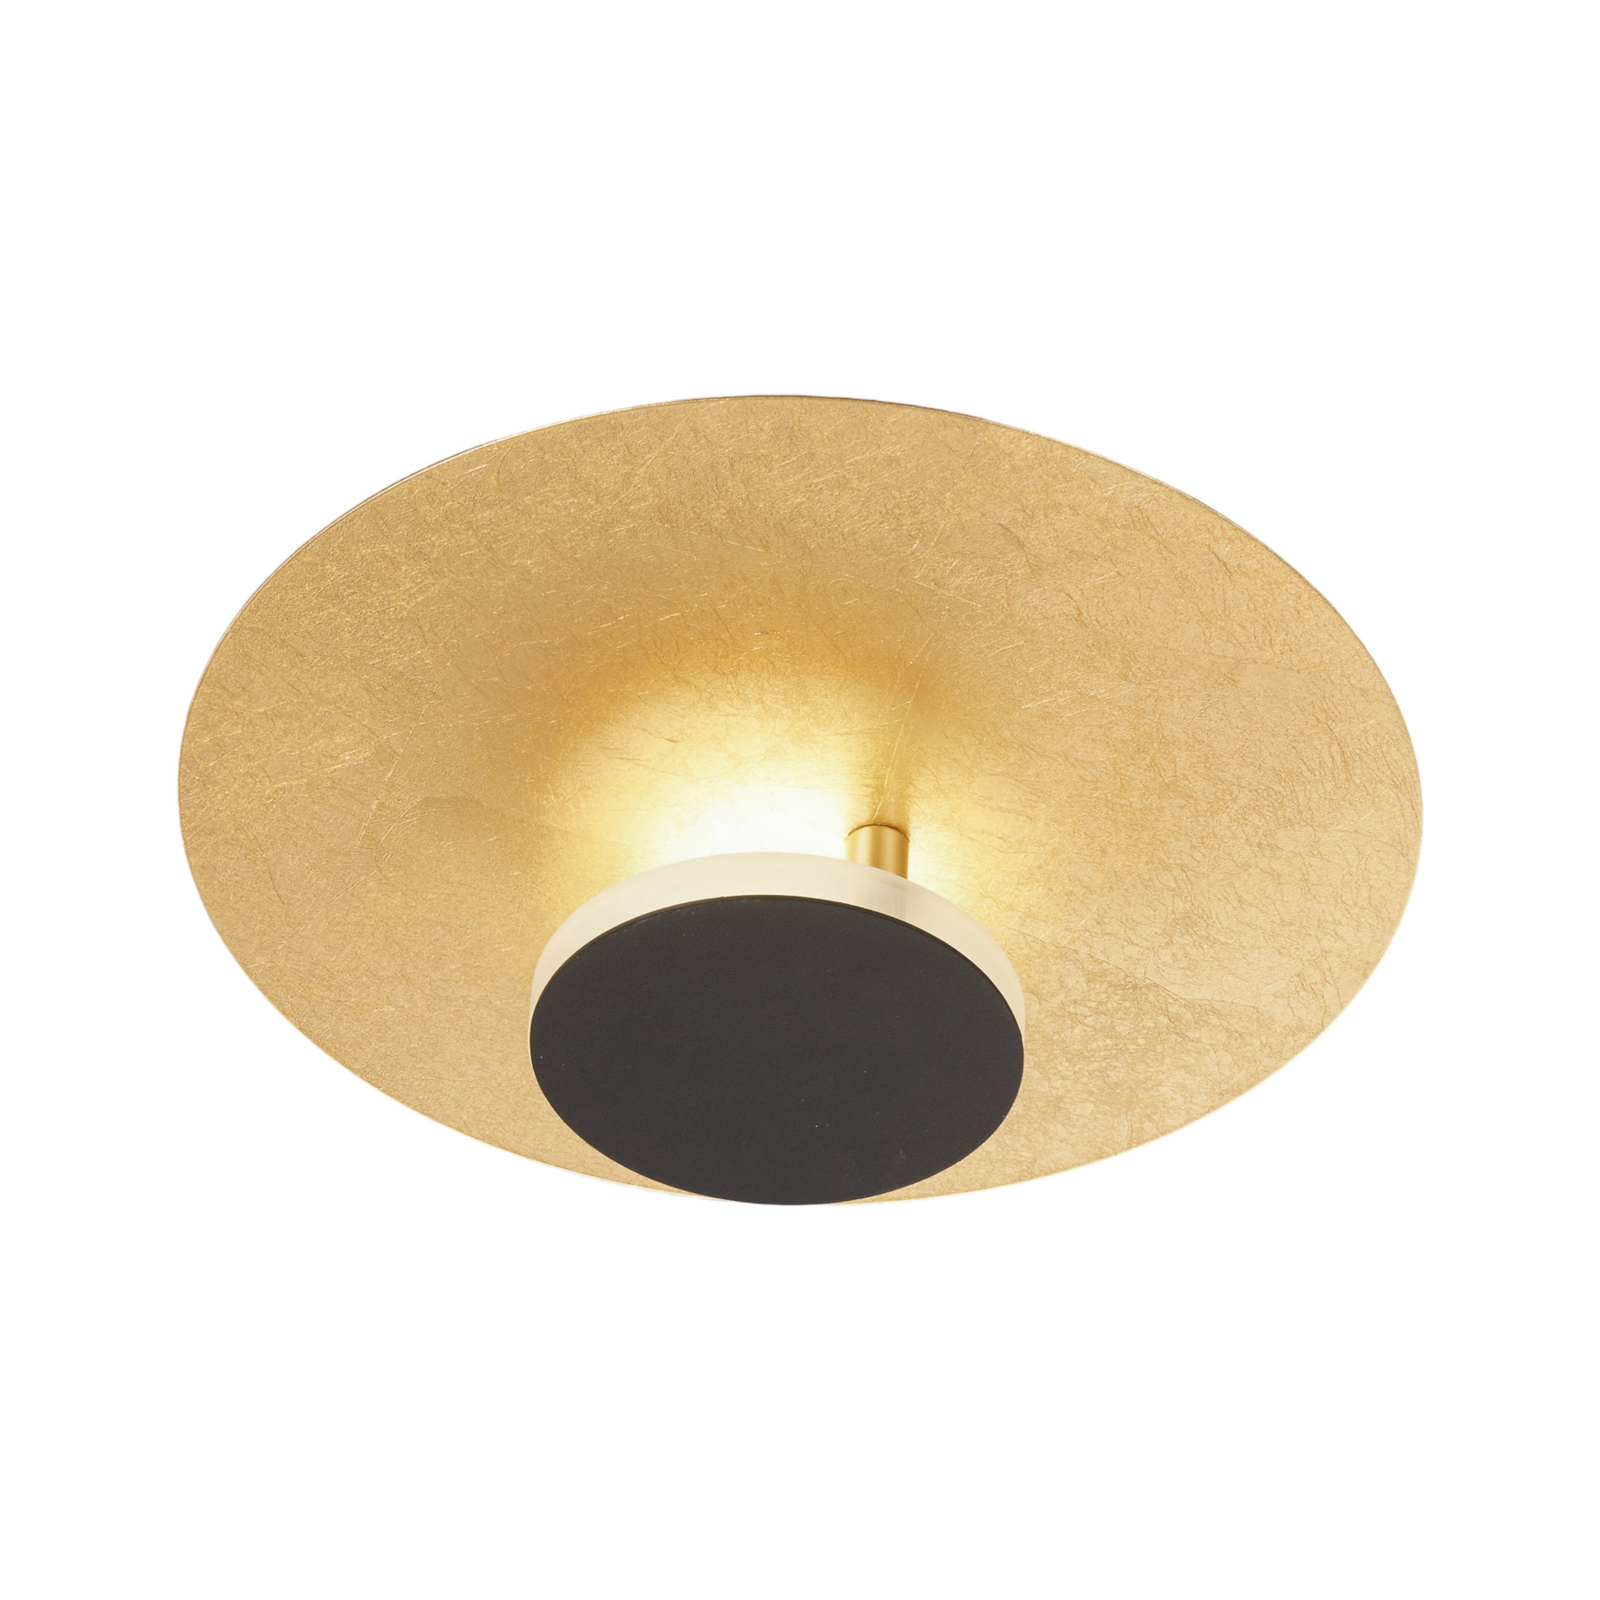 Planet LED-loftlampe, indirekte Ø 30 cm, guld/sort